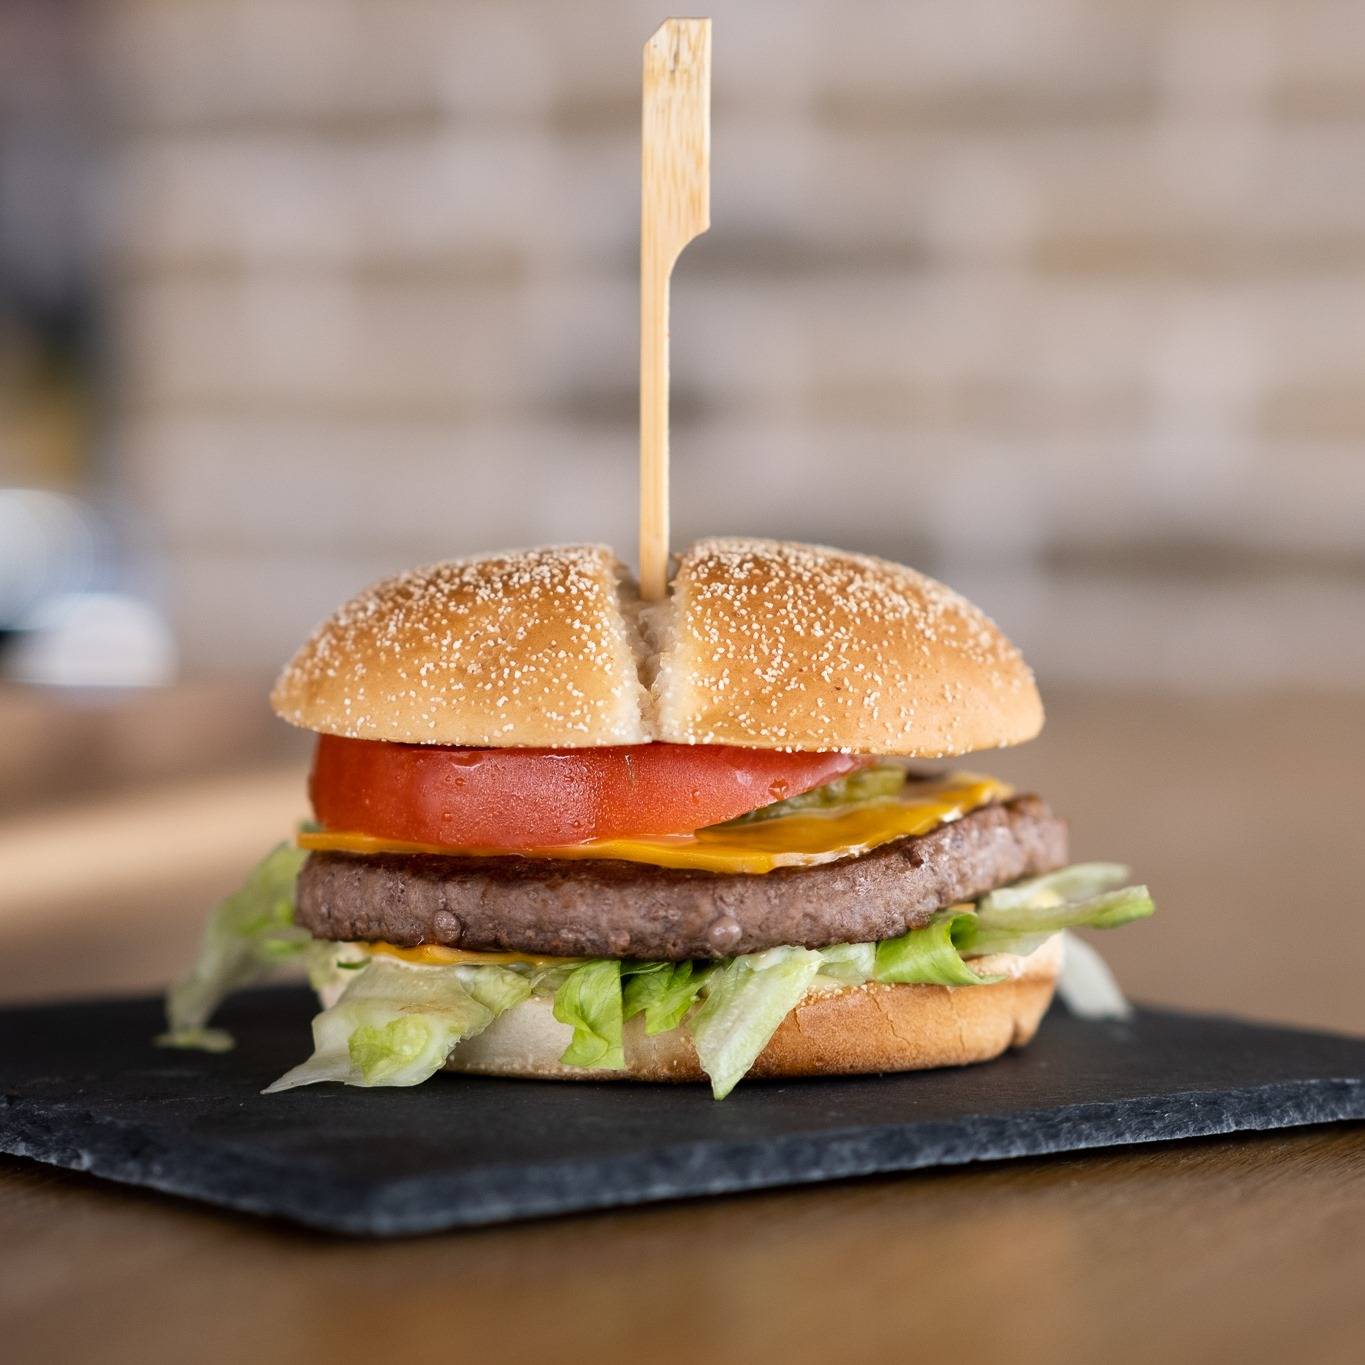 Menu Beef Burger TacoShake : 1 Burger + 1 portion de frites au choix + 1 boisson au choix